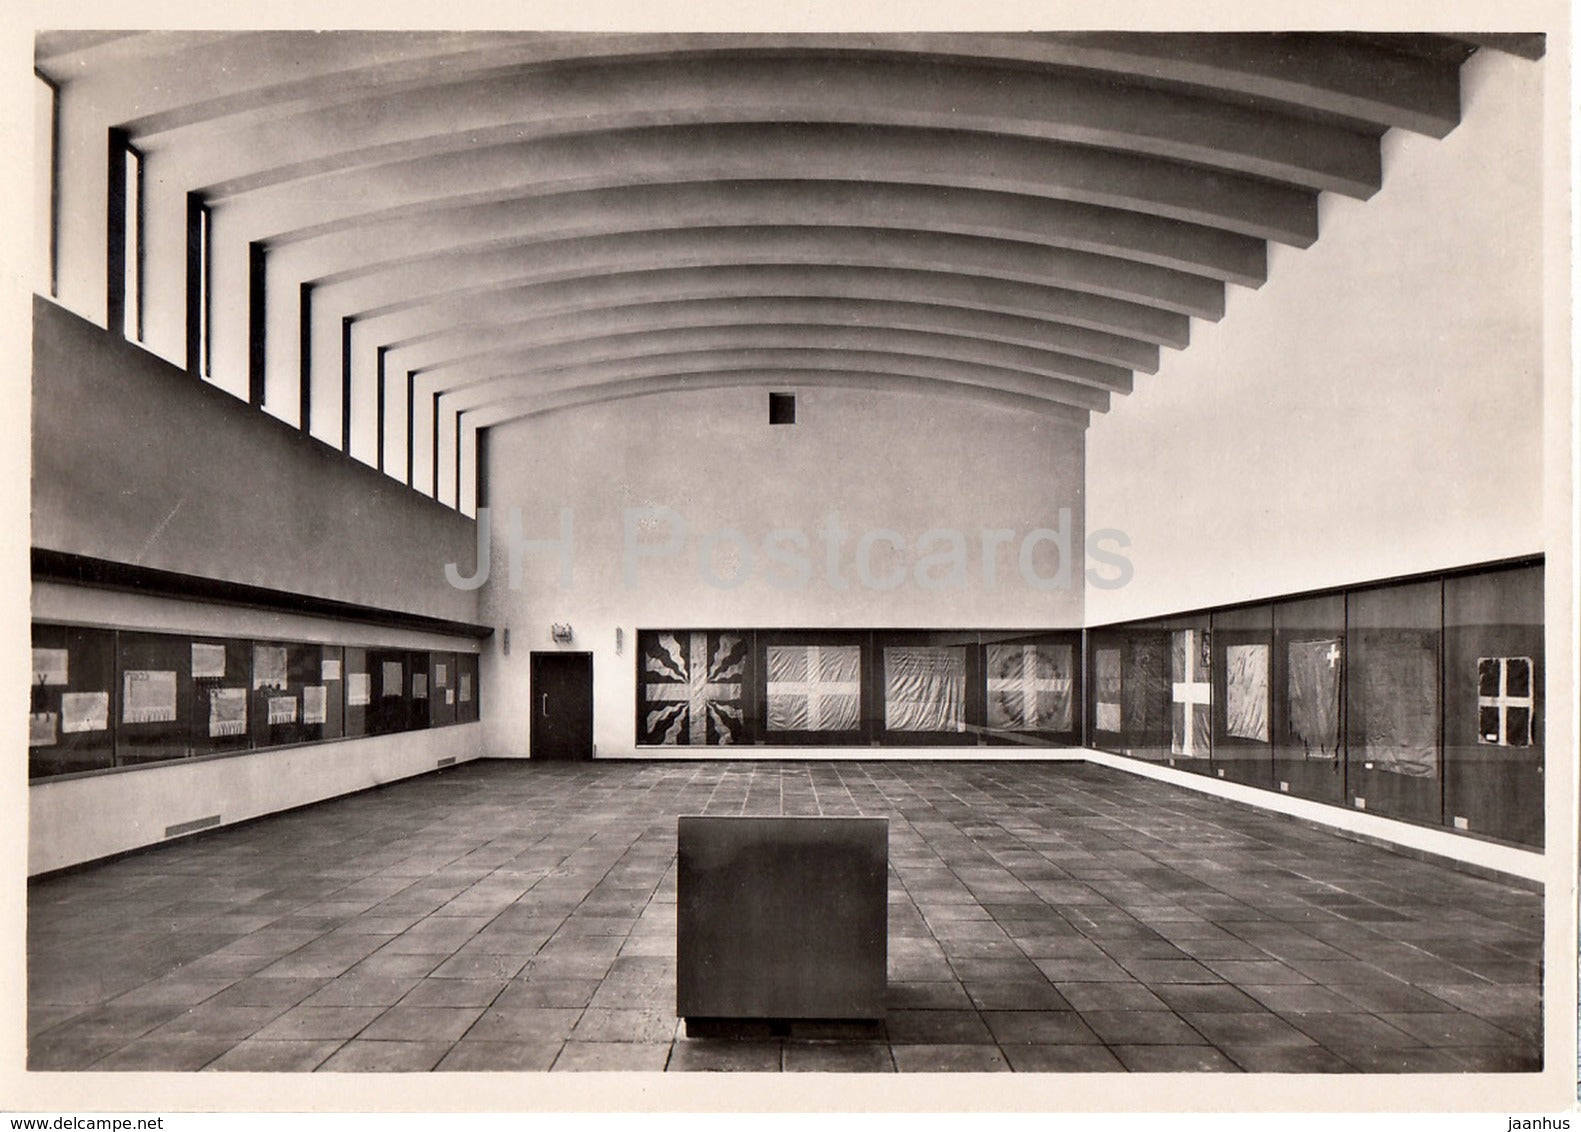 Schwyz - Ausstellungssaal des Bundesbrief Archives - 1957 - Switzerland - unused - JH Postcards